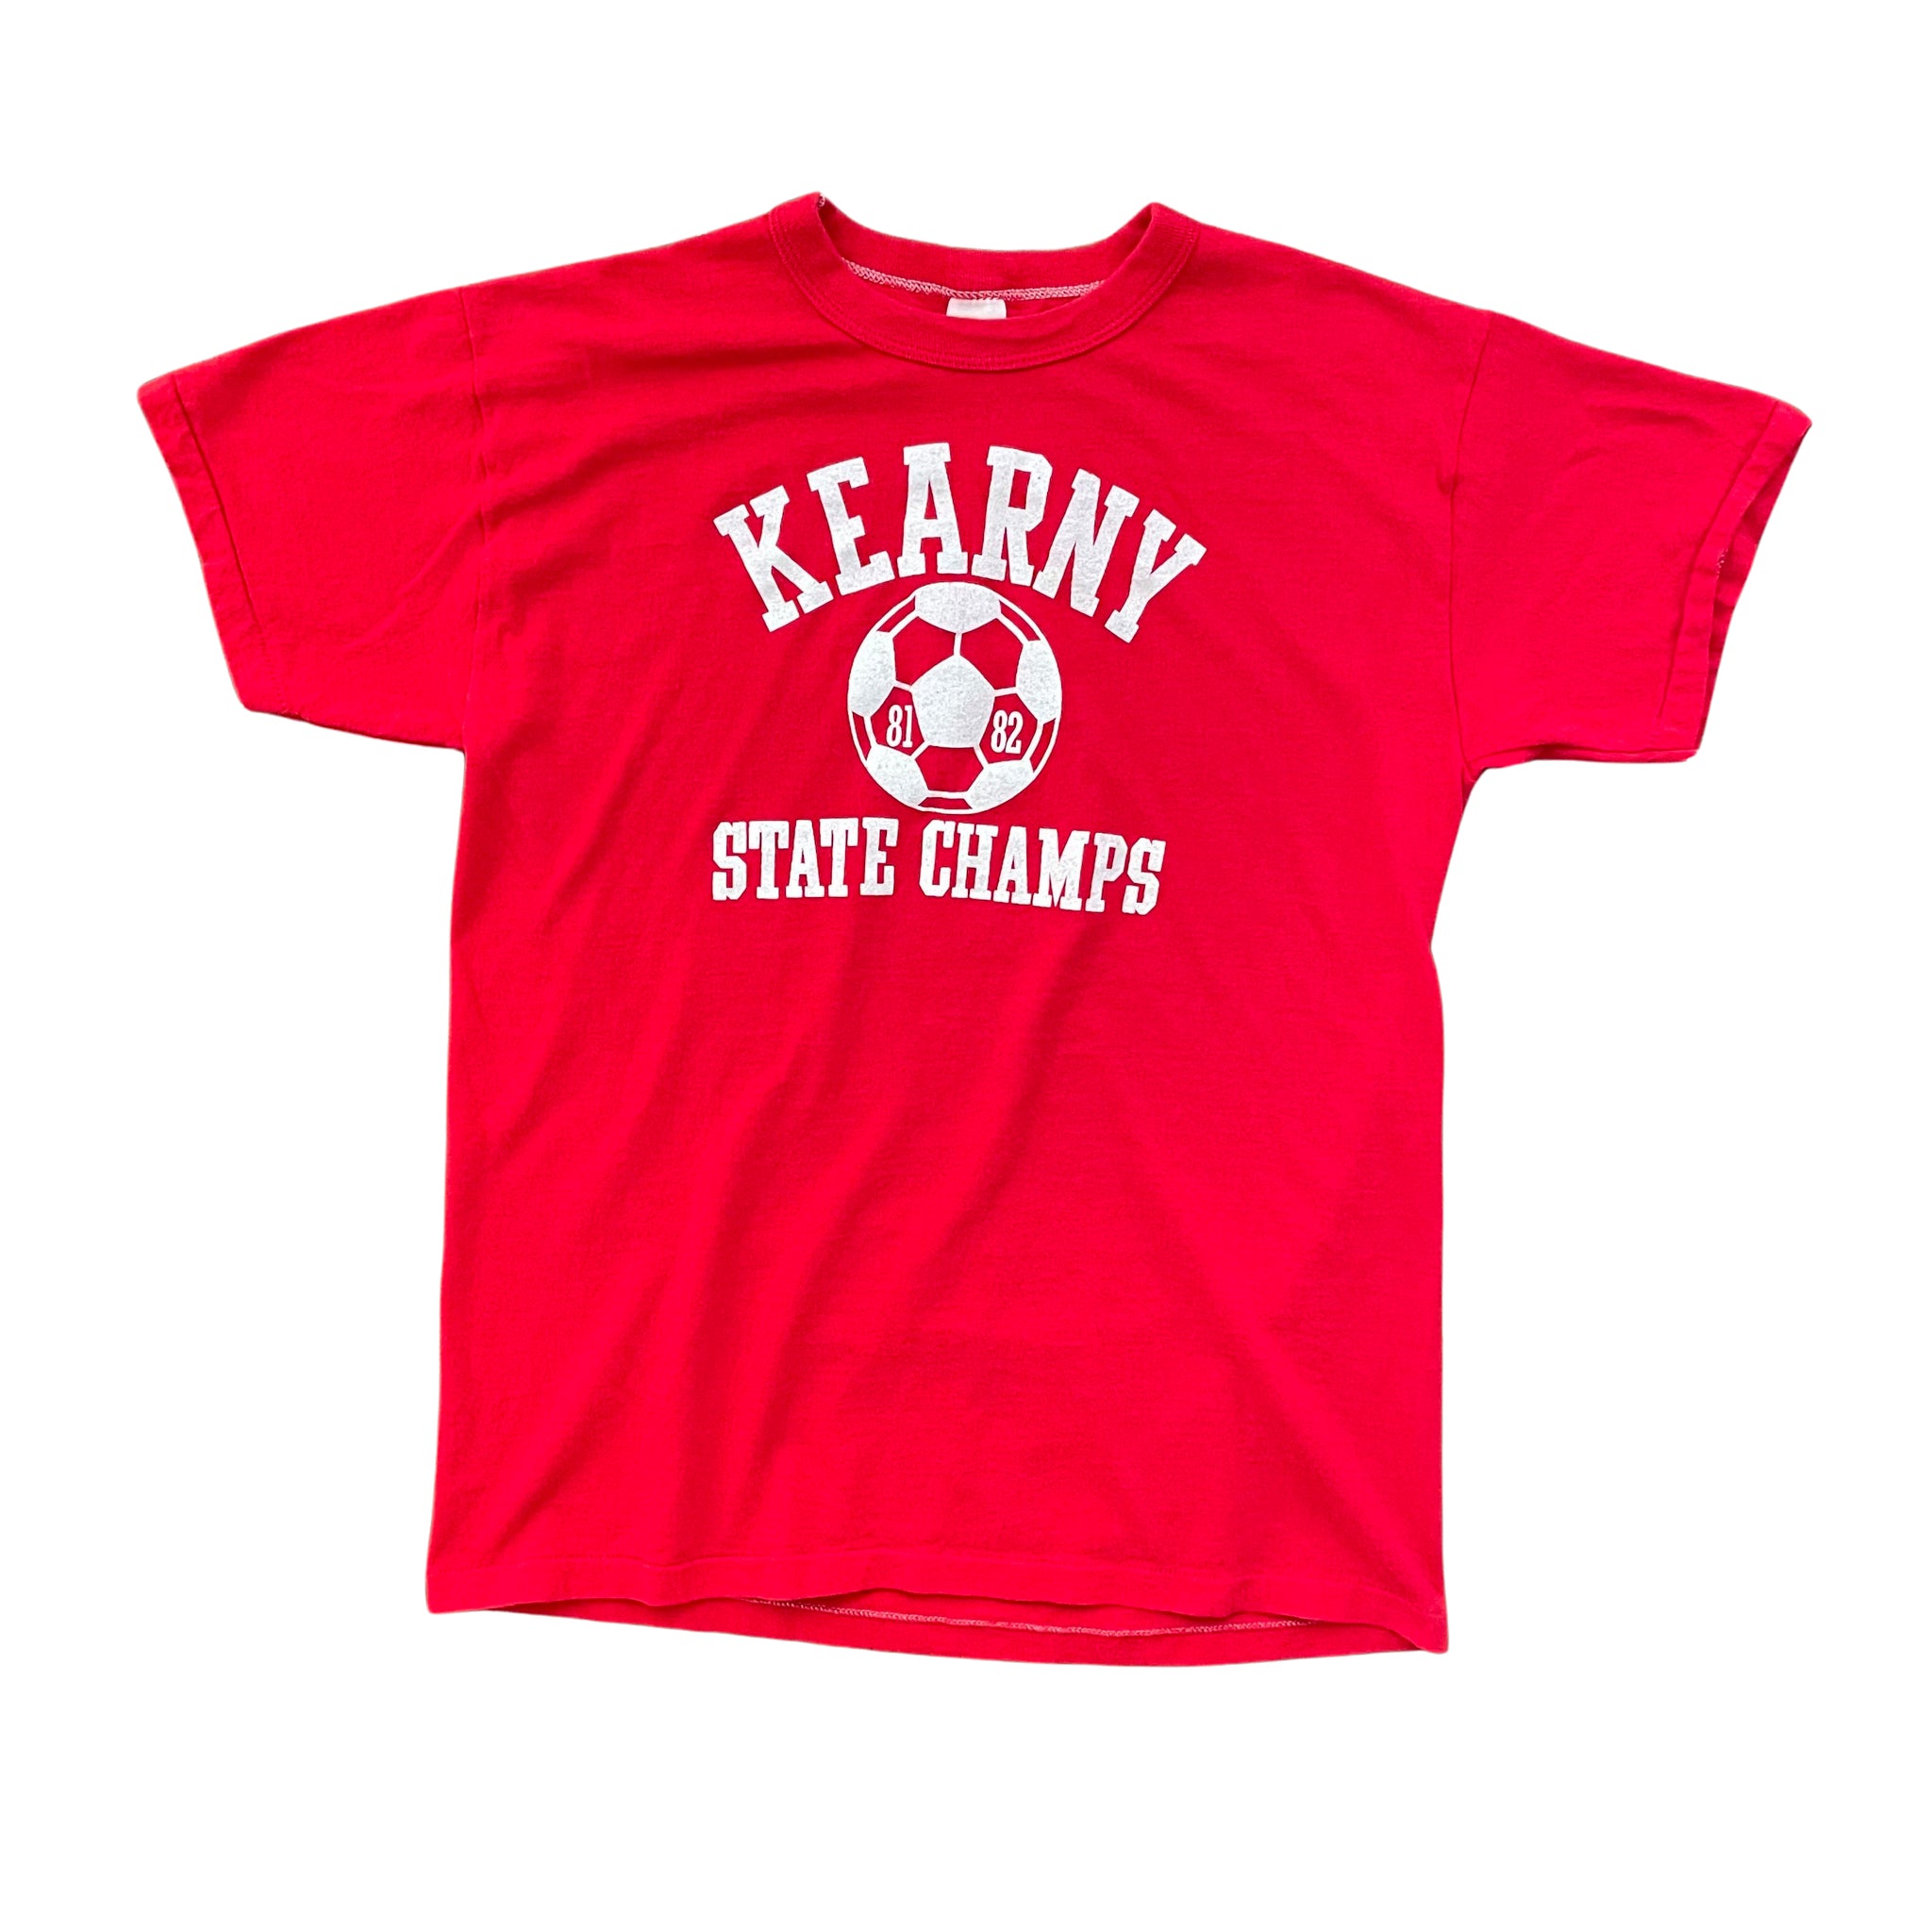 Kearny State Champs T-Shirt - M